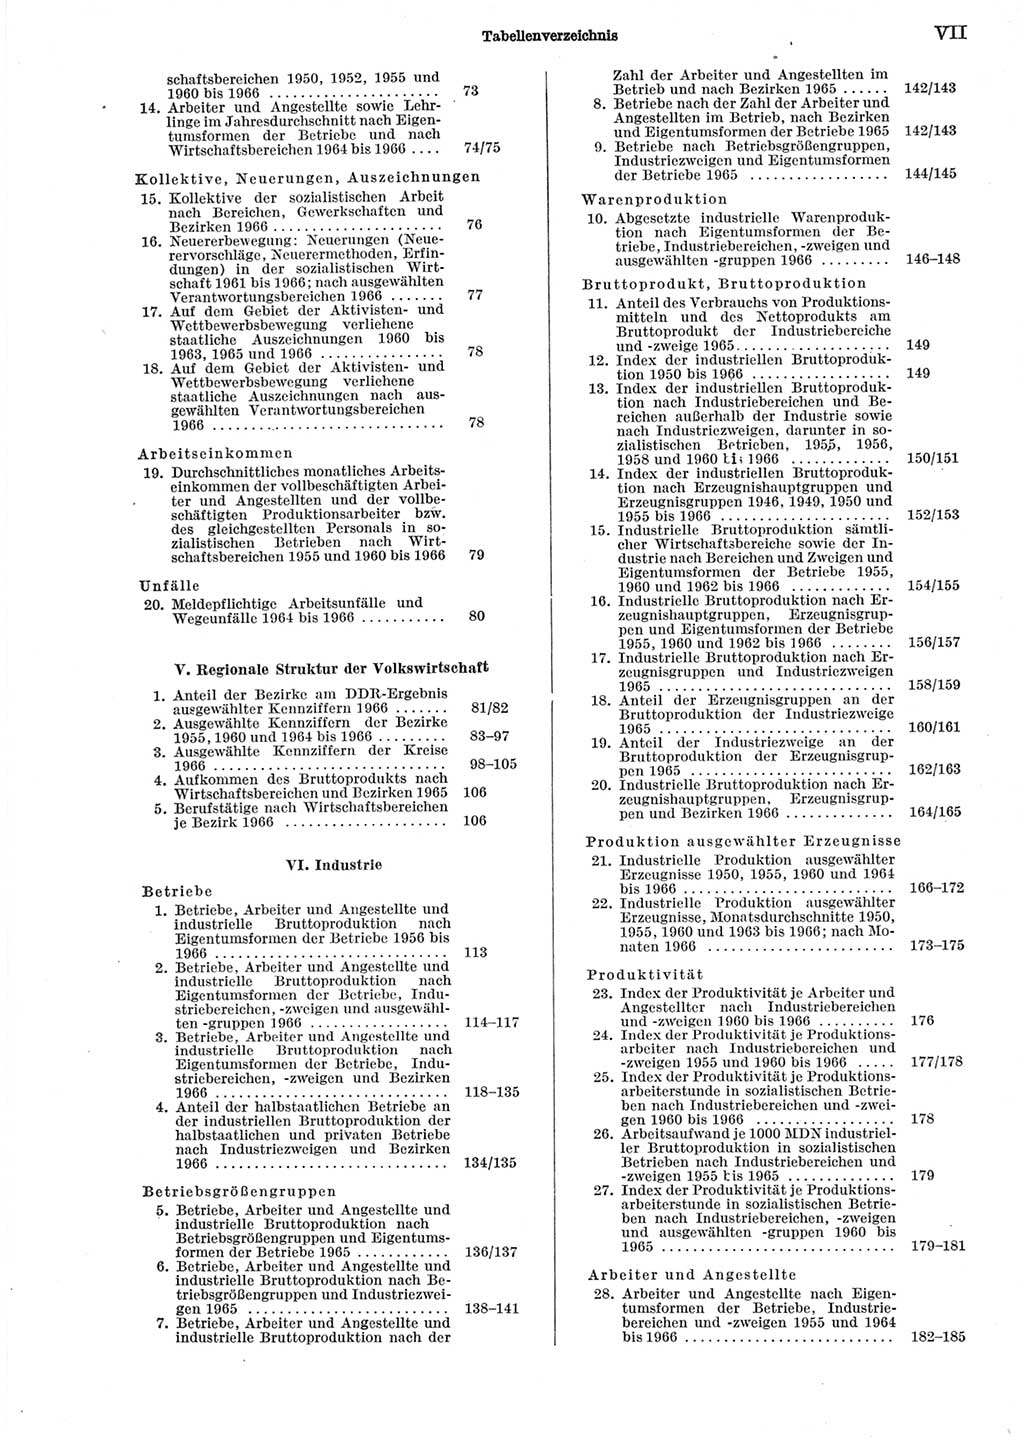 Statistisches Jahrbuch der Deutschen Demokratischen Republik (DDR) 1967, Seite 7 (Stat. Jb. DDR 1967, S. 7)